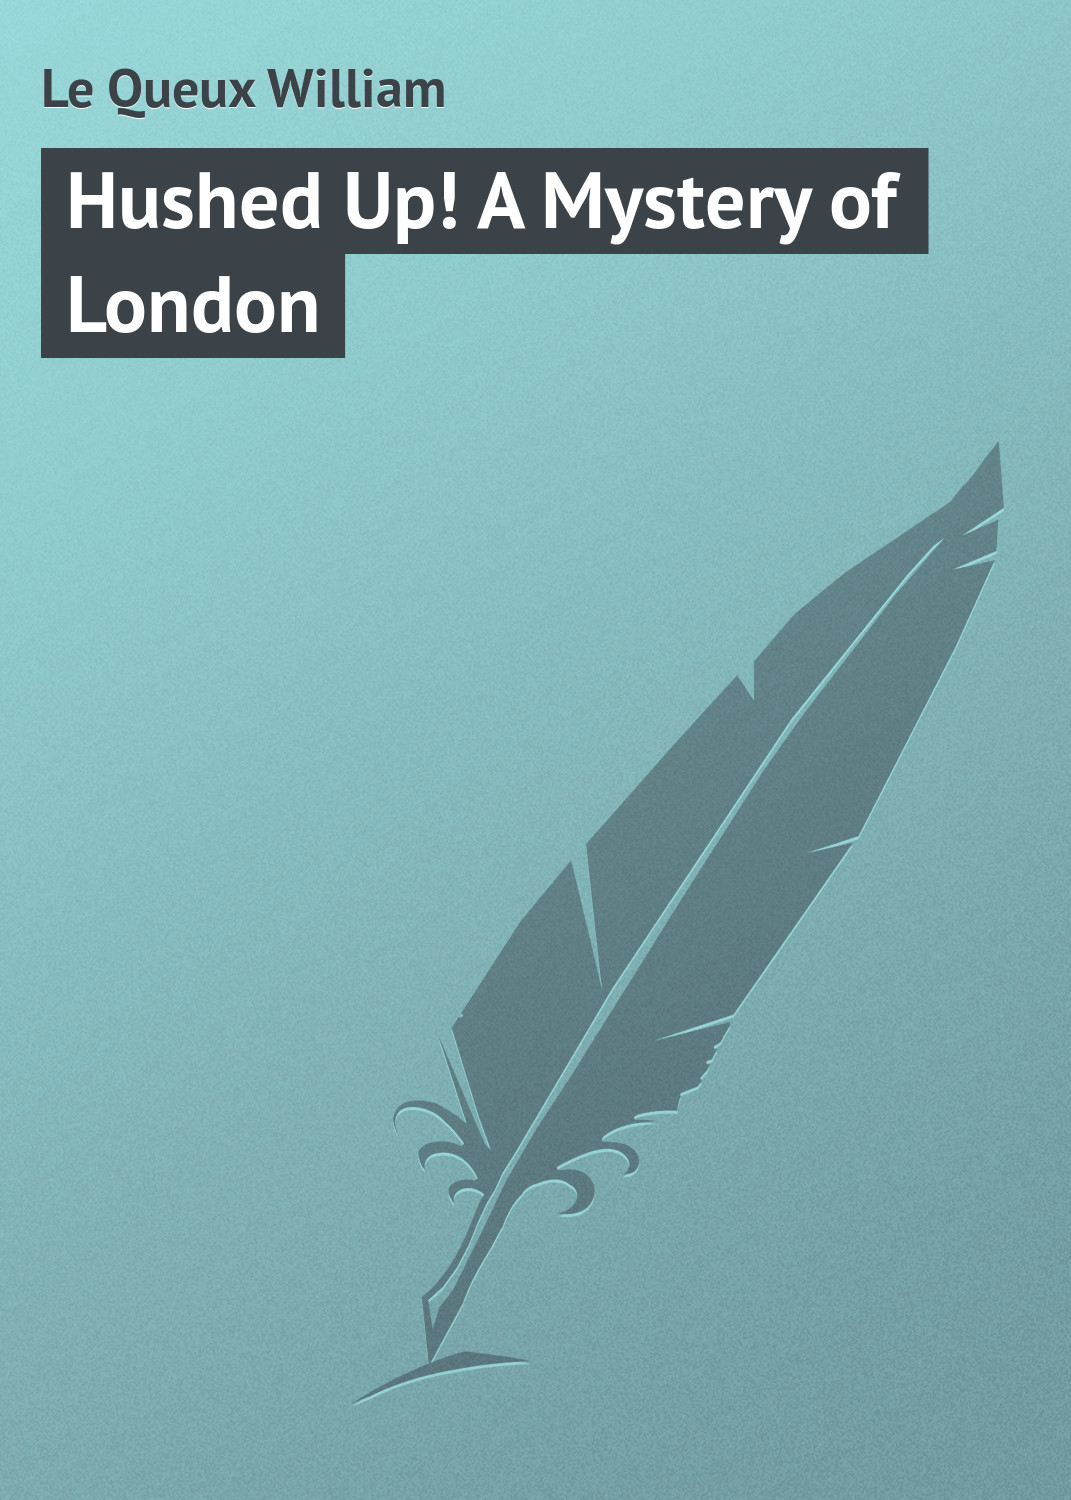 Книга Hushed Up! A Mystery of London из серии , созданная William Le Queux, может относится к жанру Классические детективы, Зарубежные детективы, Зарубежная классика. Стоимость электронной книги Hushed Up! A Mystery of London с идентификатором 23145299 составляет 5.99 руб.